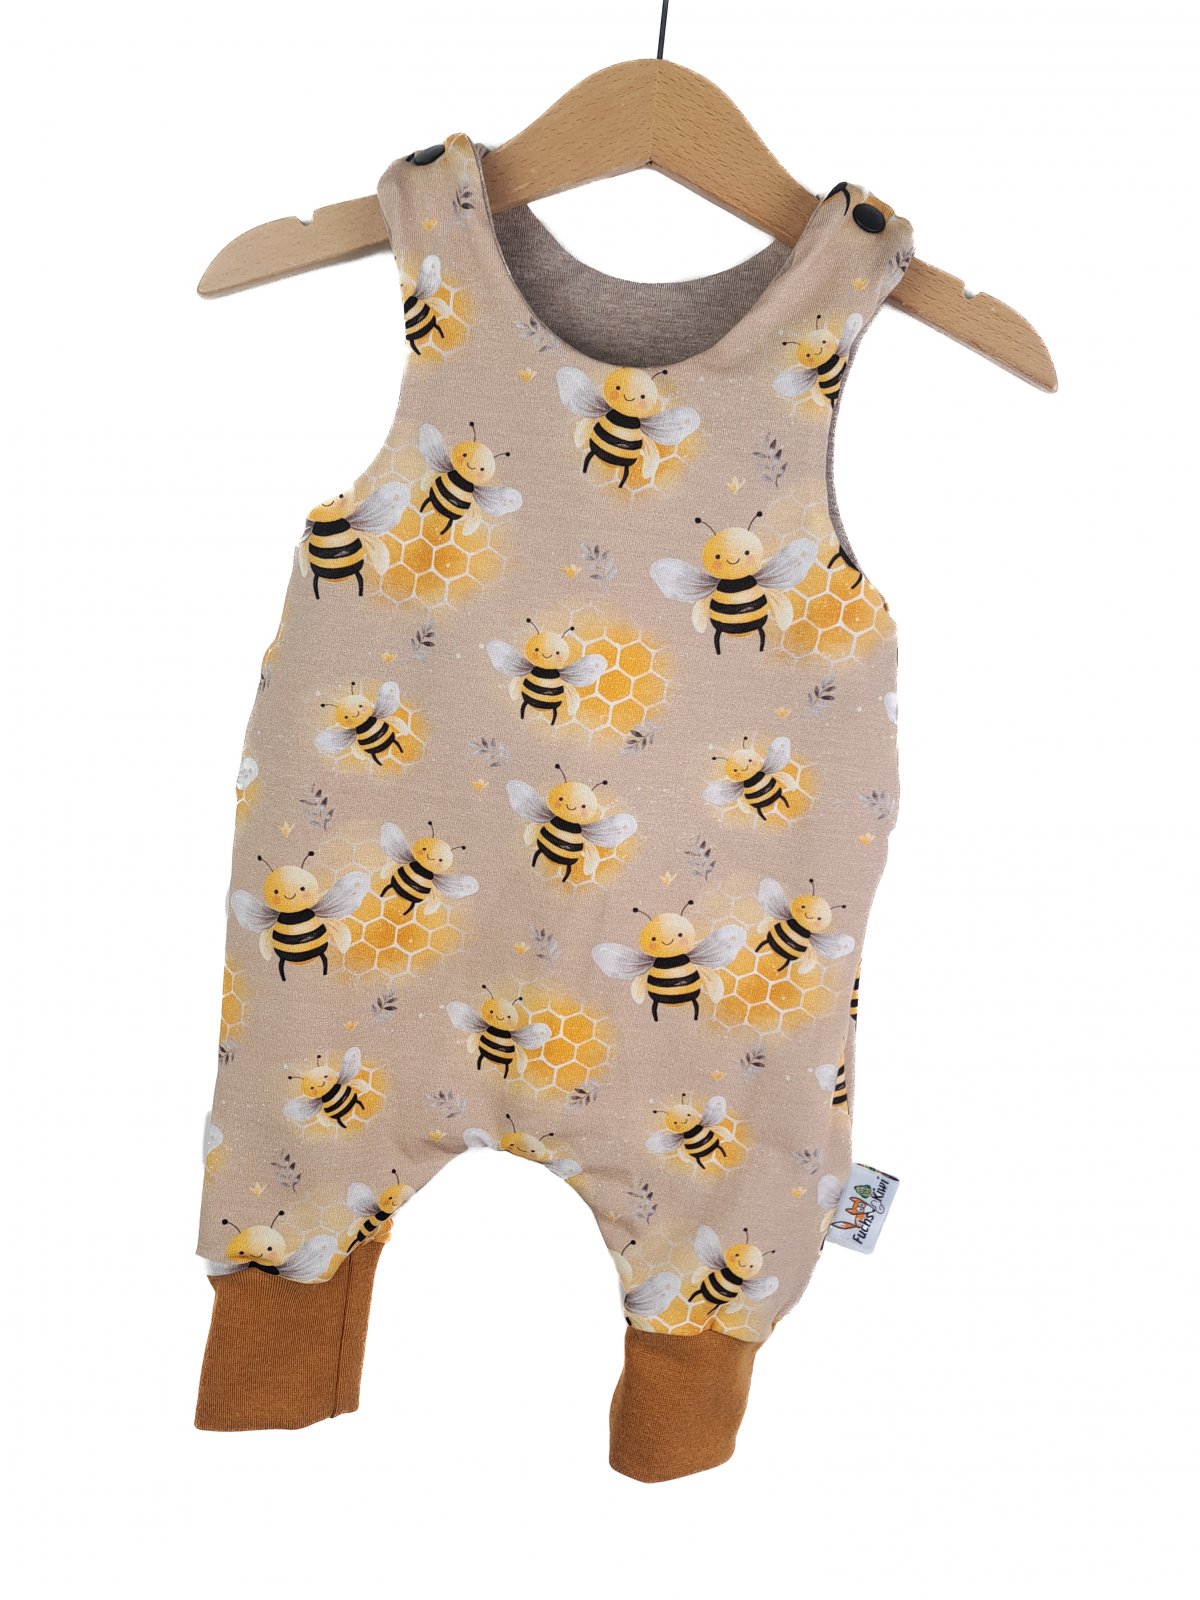 Bienen Bandit Outfit 2 